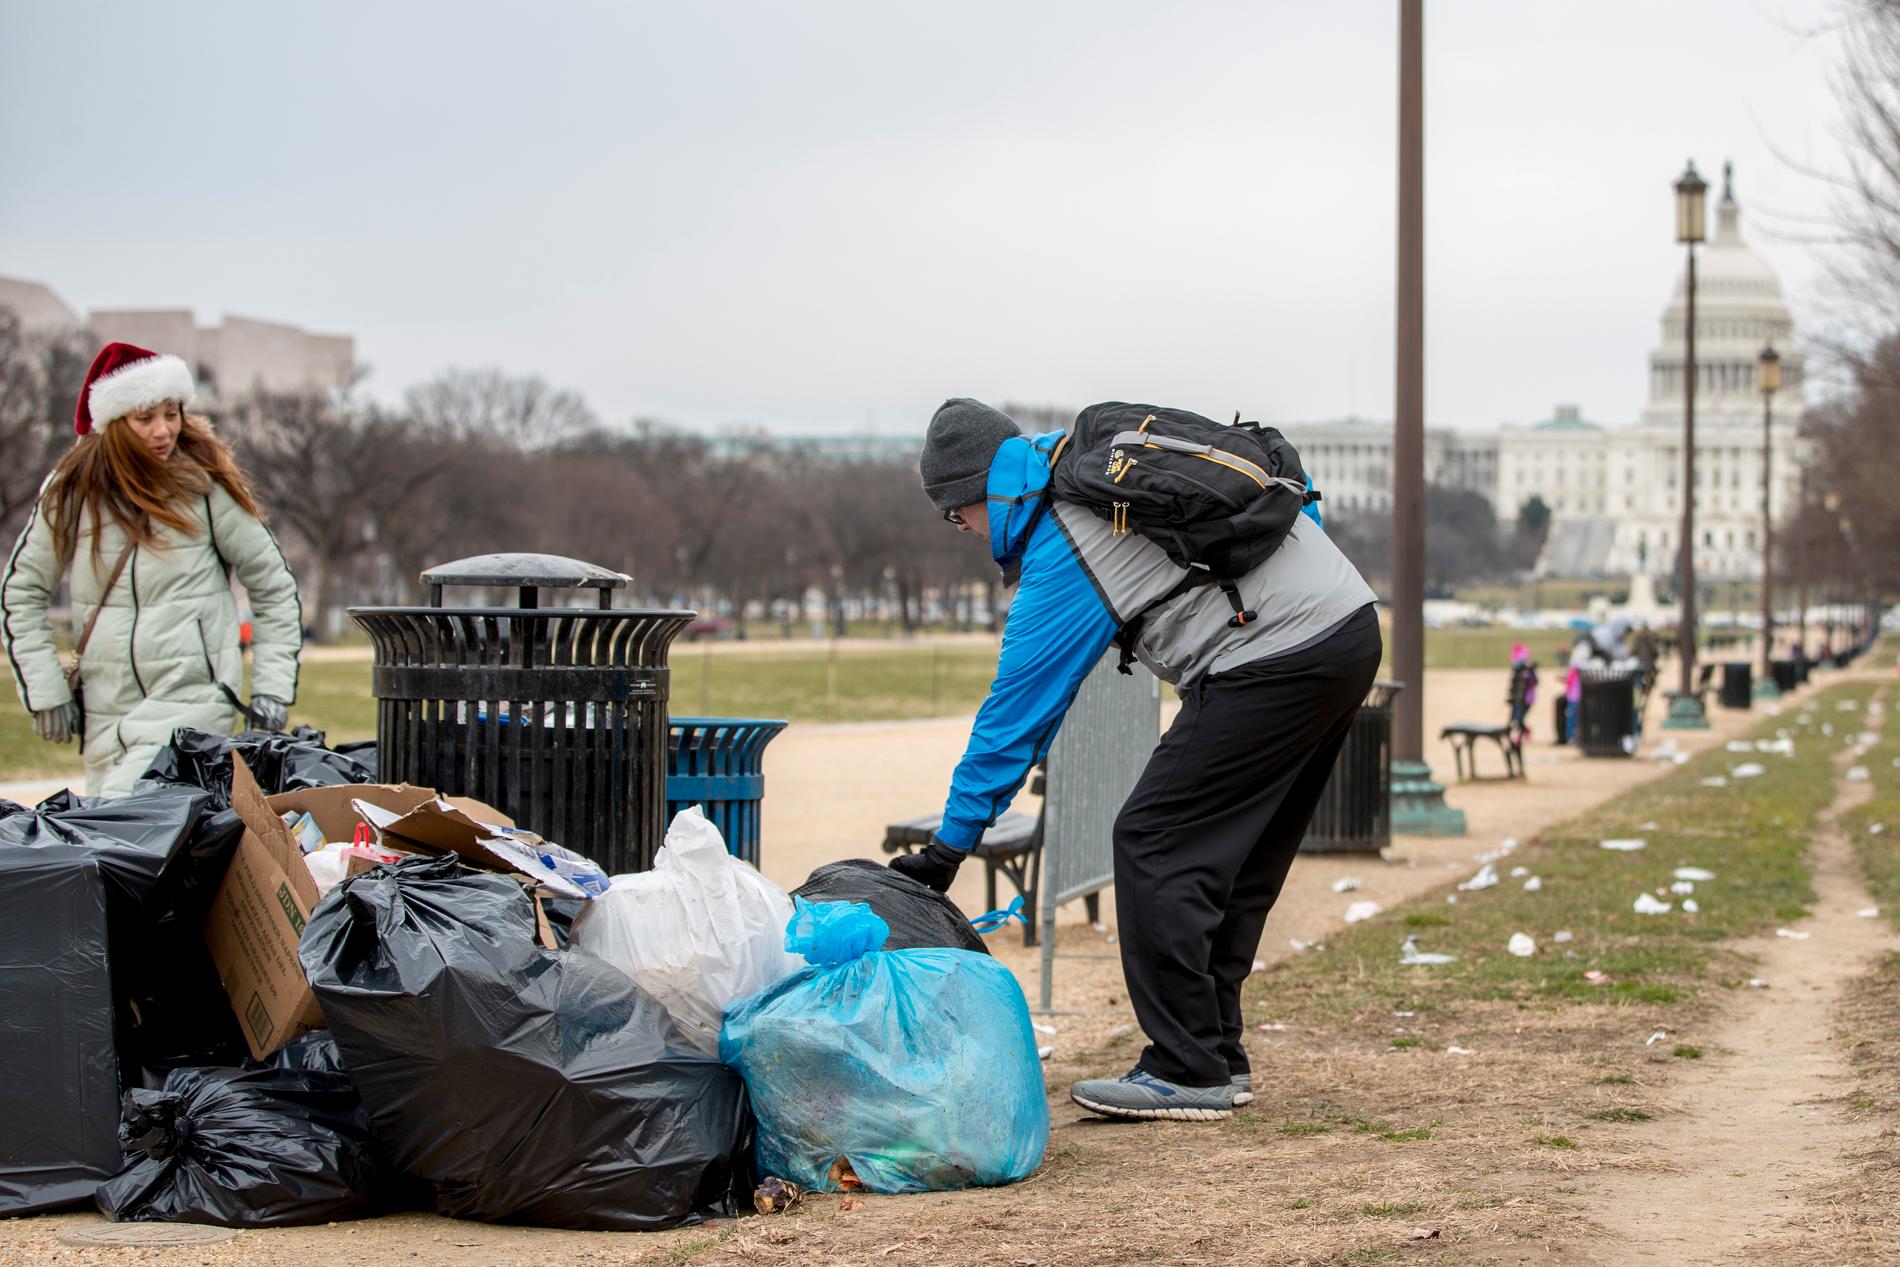 En frivilig tar hans om sopor vid grönområdet National Mall i USA:s huvudstad Washington DC. I bakgrunden syns kongressbyggnaden Capitolium, där en eventuell budgetuppgörelse om att öppna statsapparaten måste godkännas.